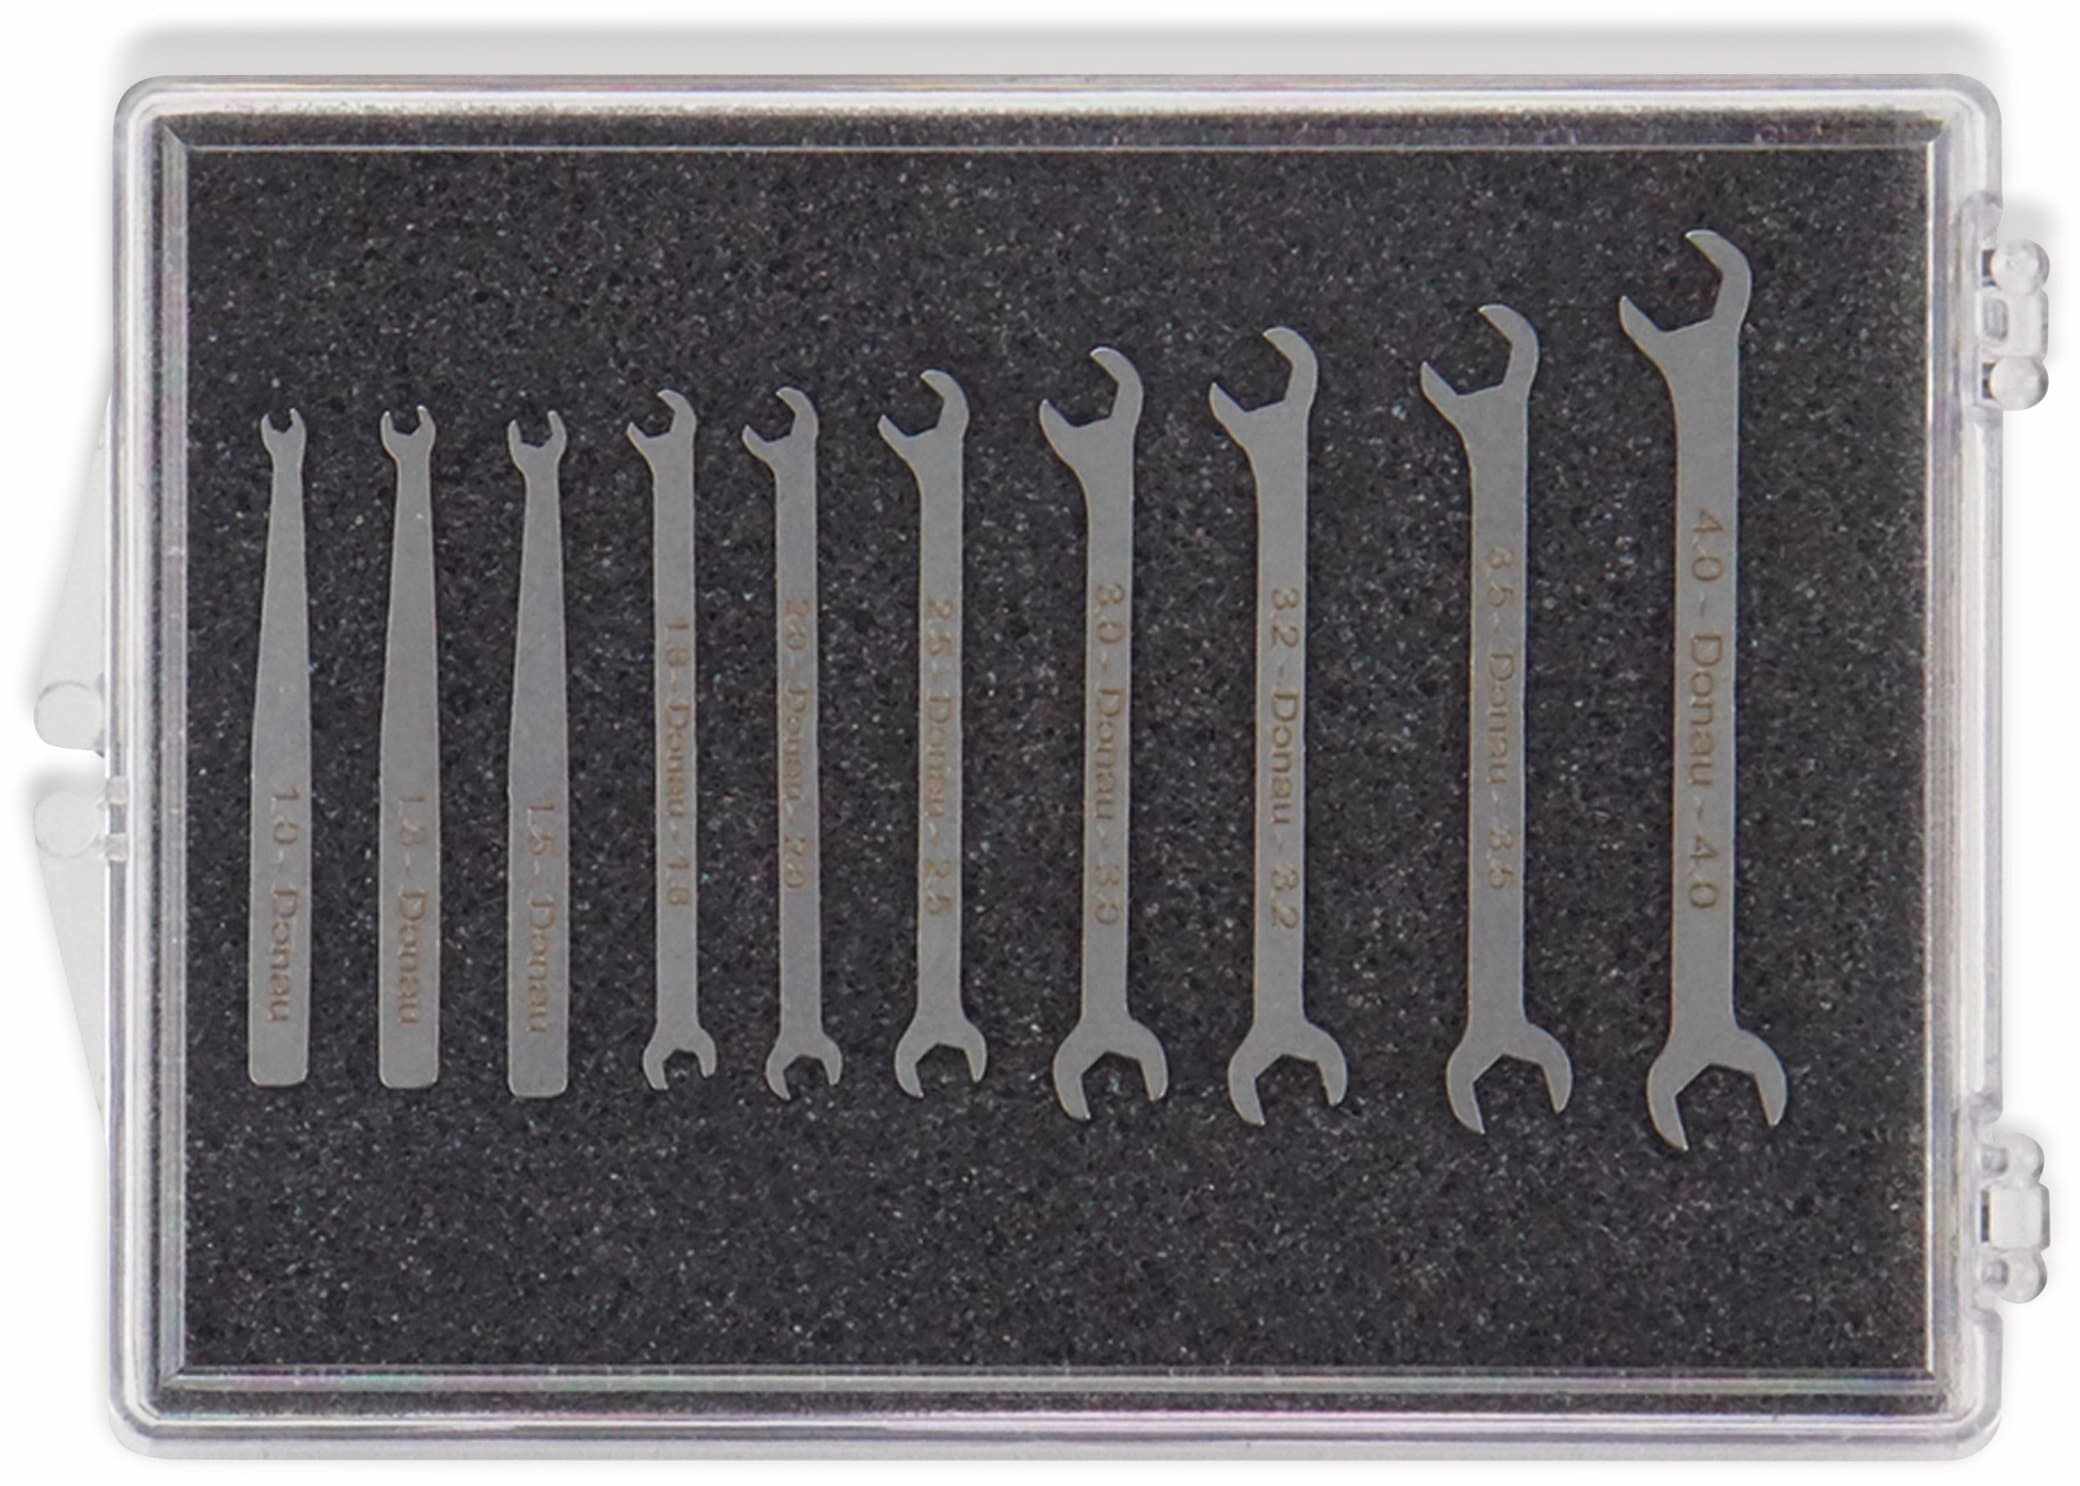 DONAU ELEKTRONIK Micro-Maulschlüsselsatz 980-SET, 1-4mm